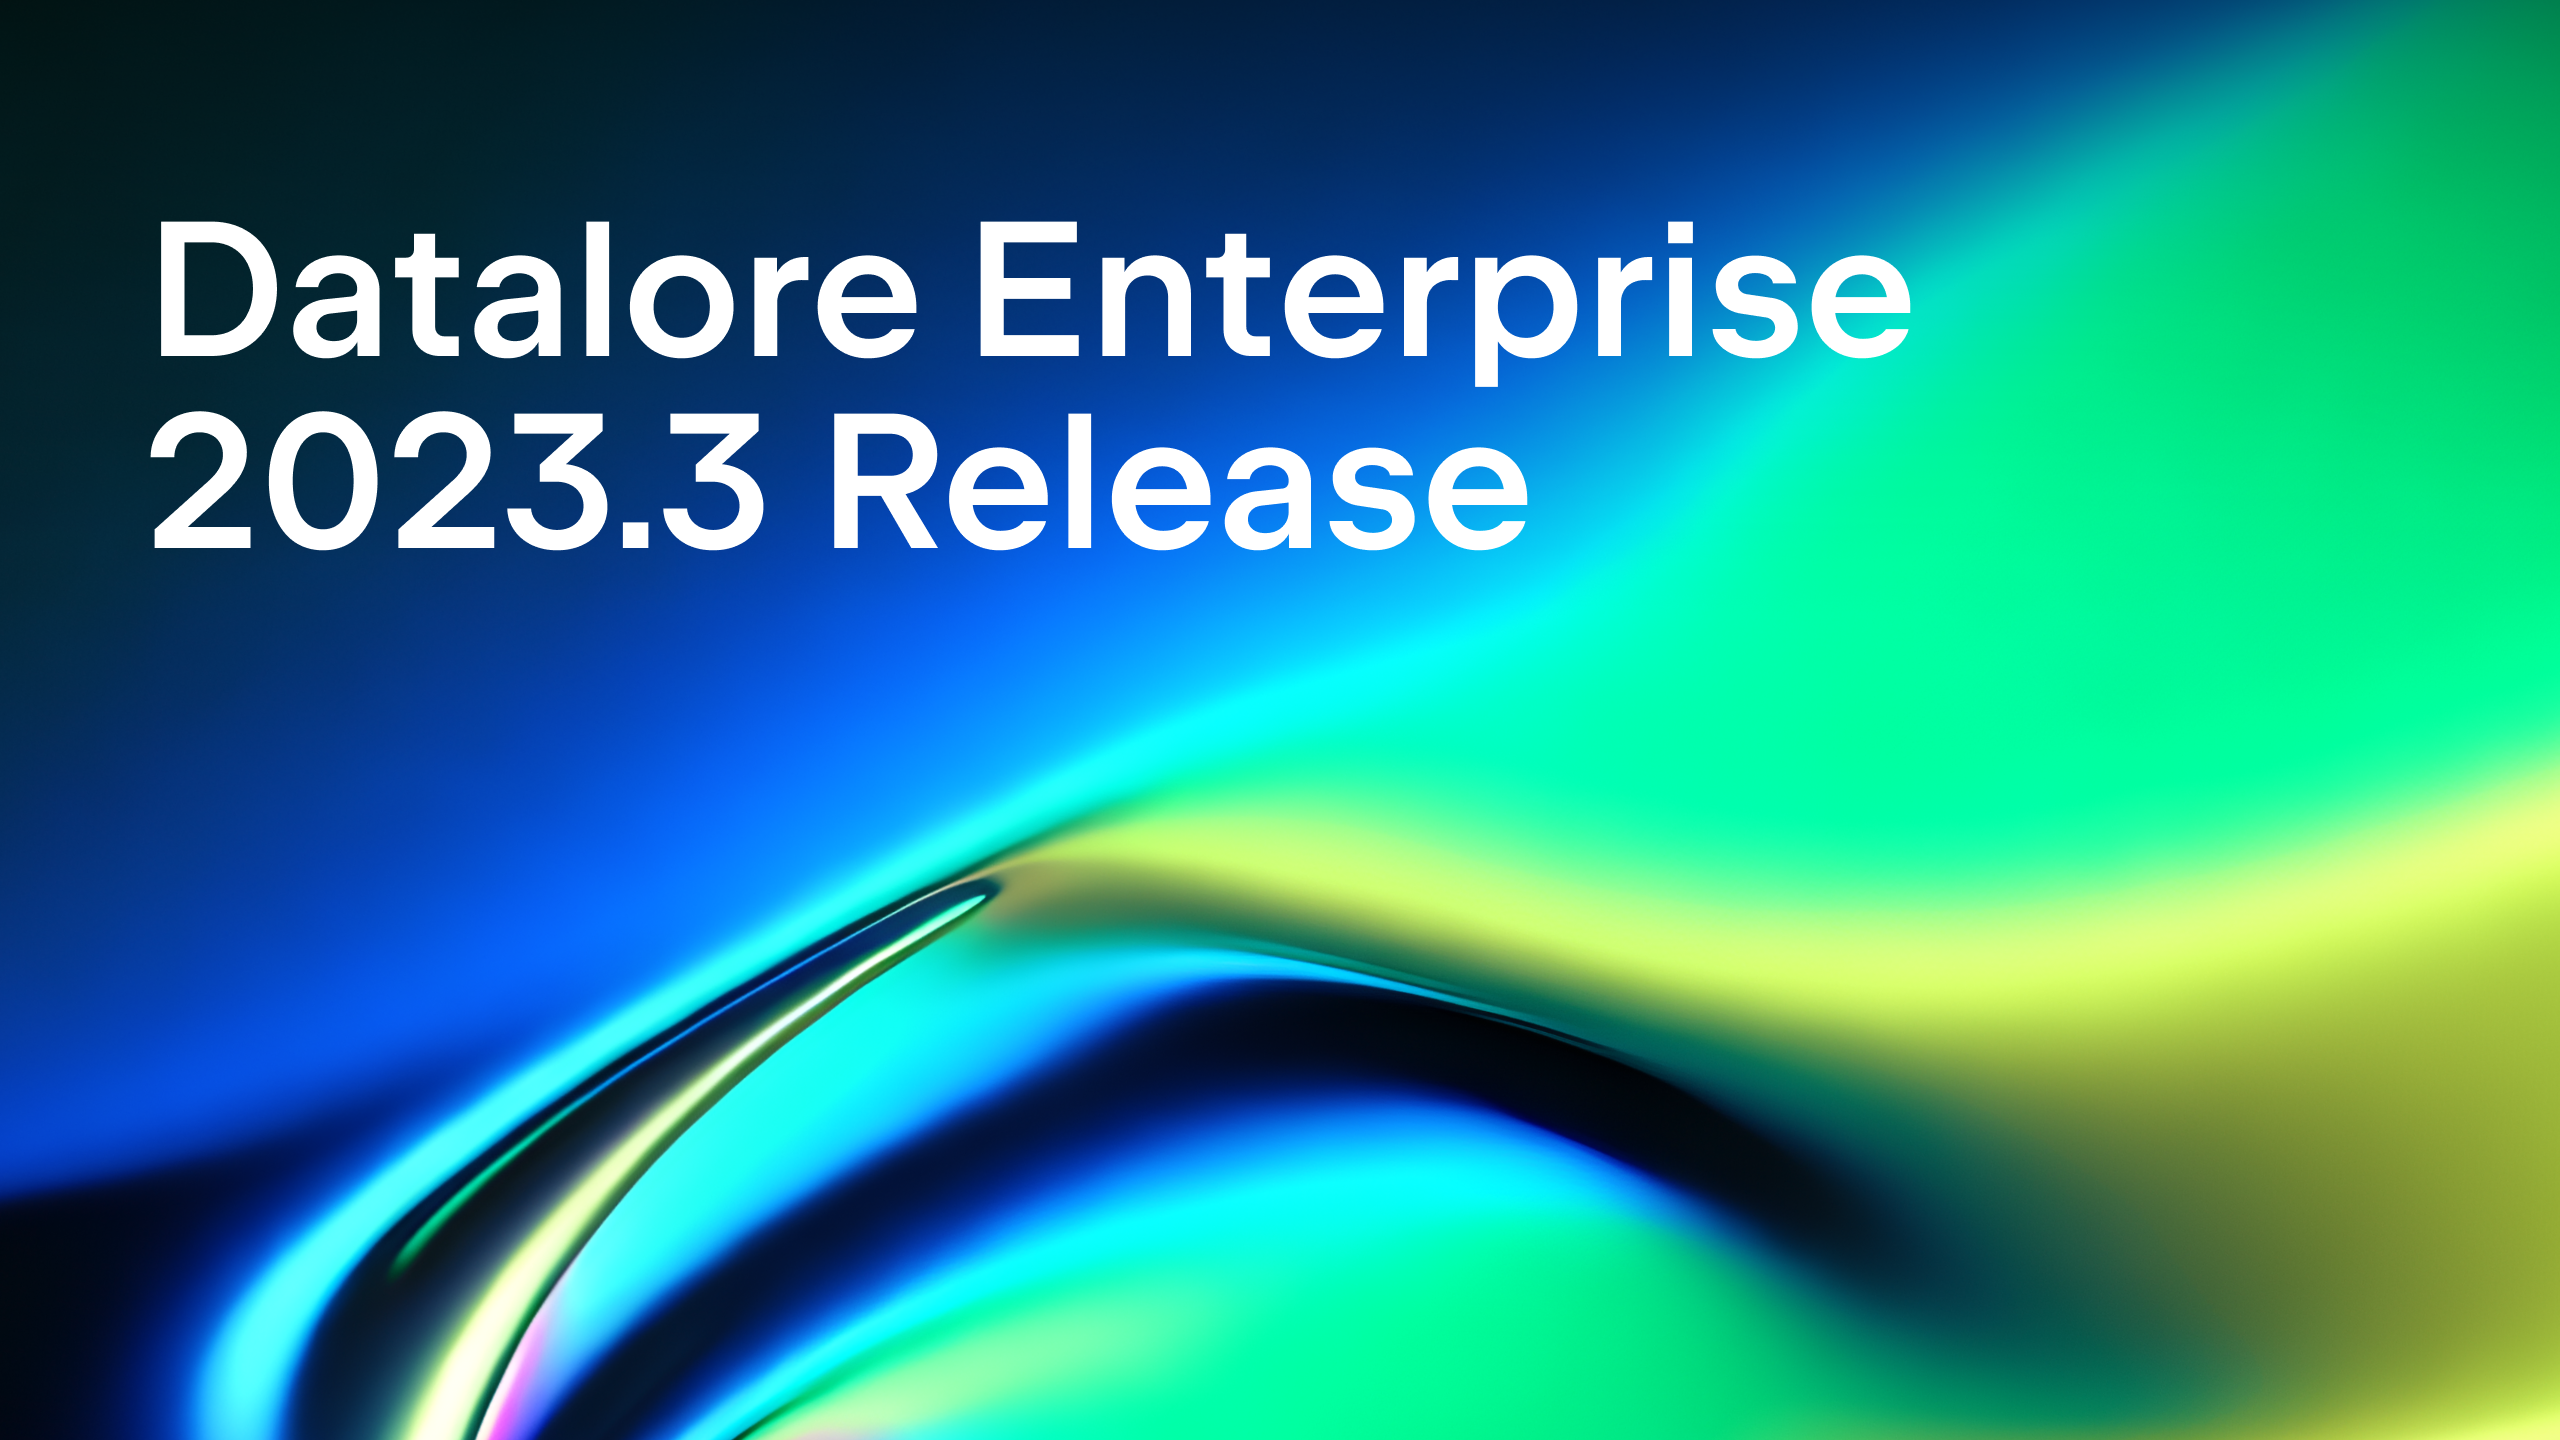 Datalore Enterprise 2023.3 is out!